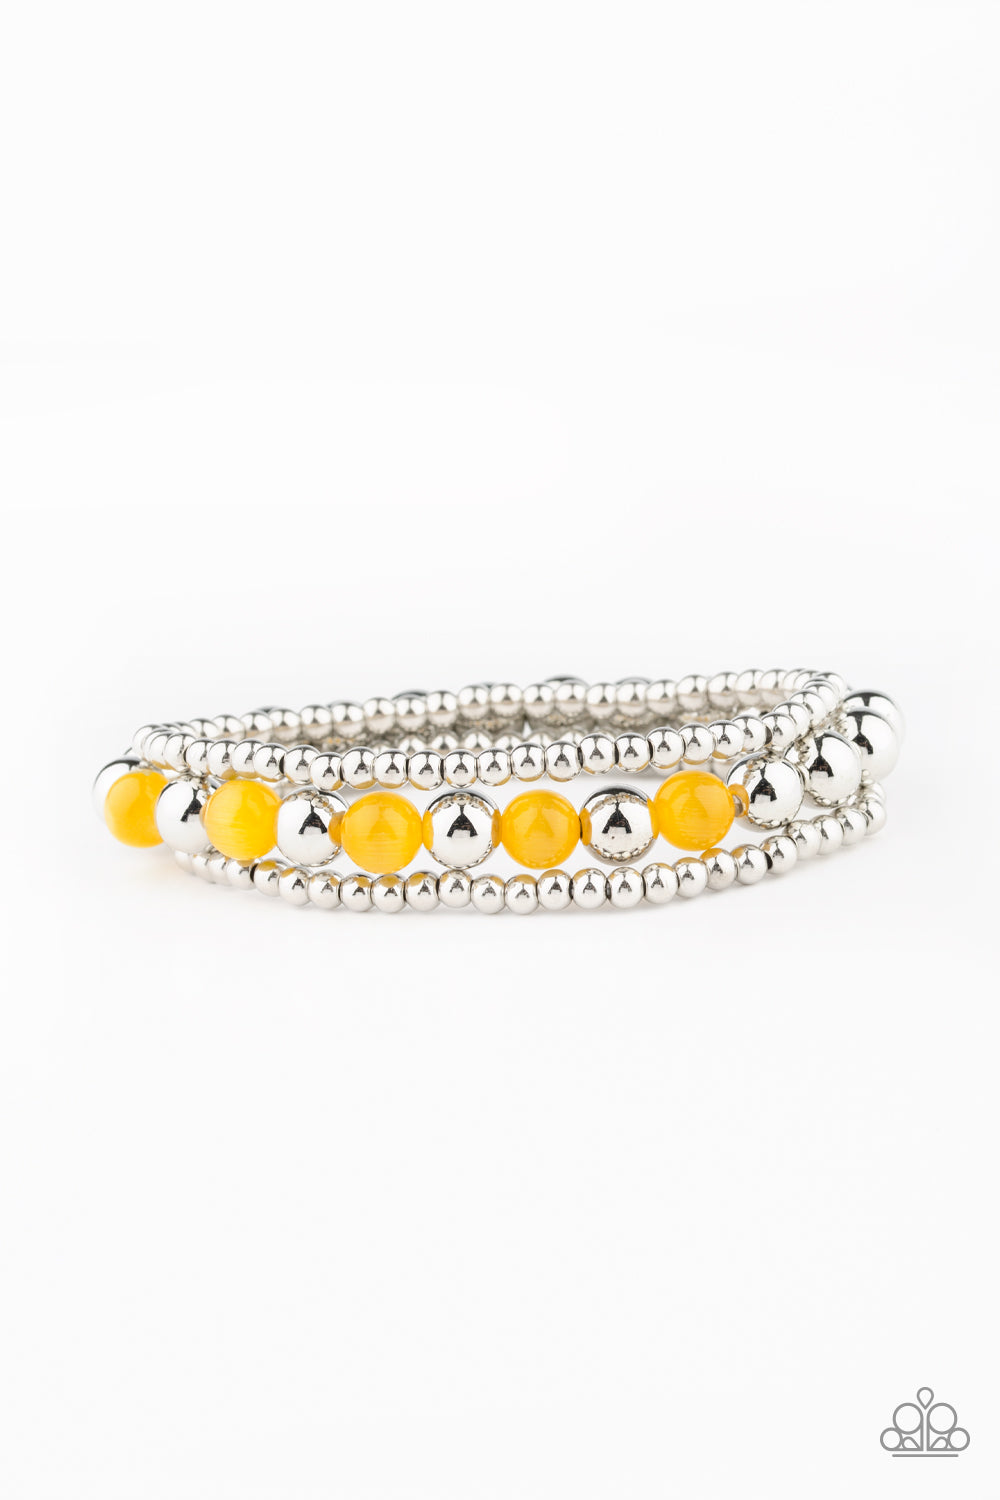 Paparazzi Bracelets - Go With The GLOW - Yellow